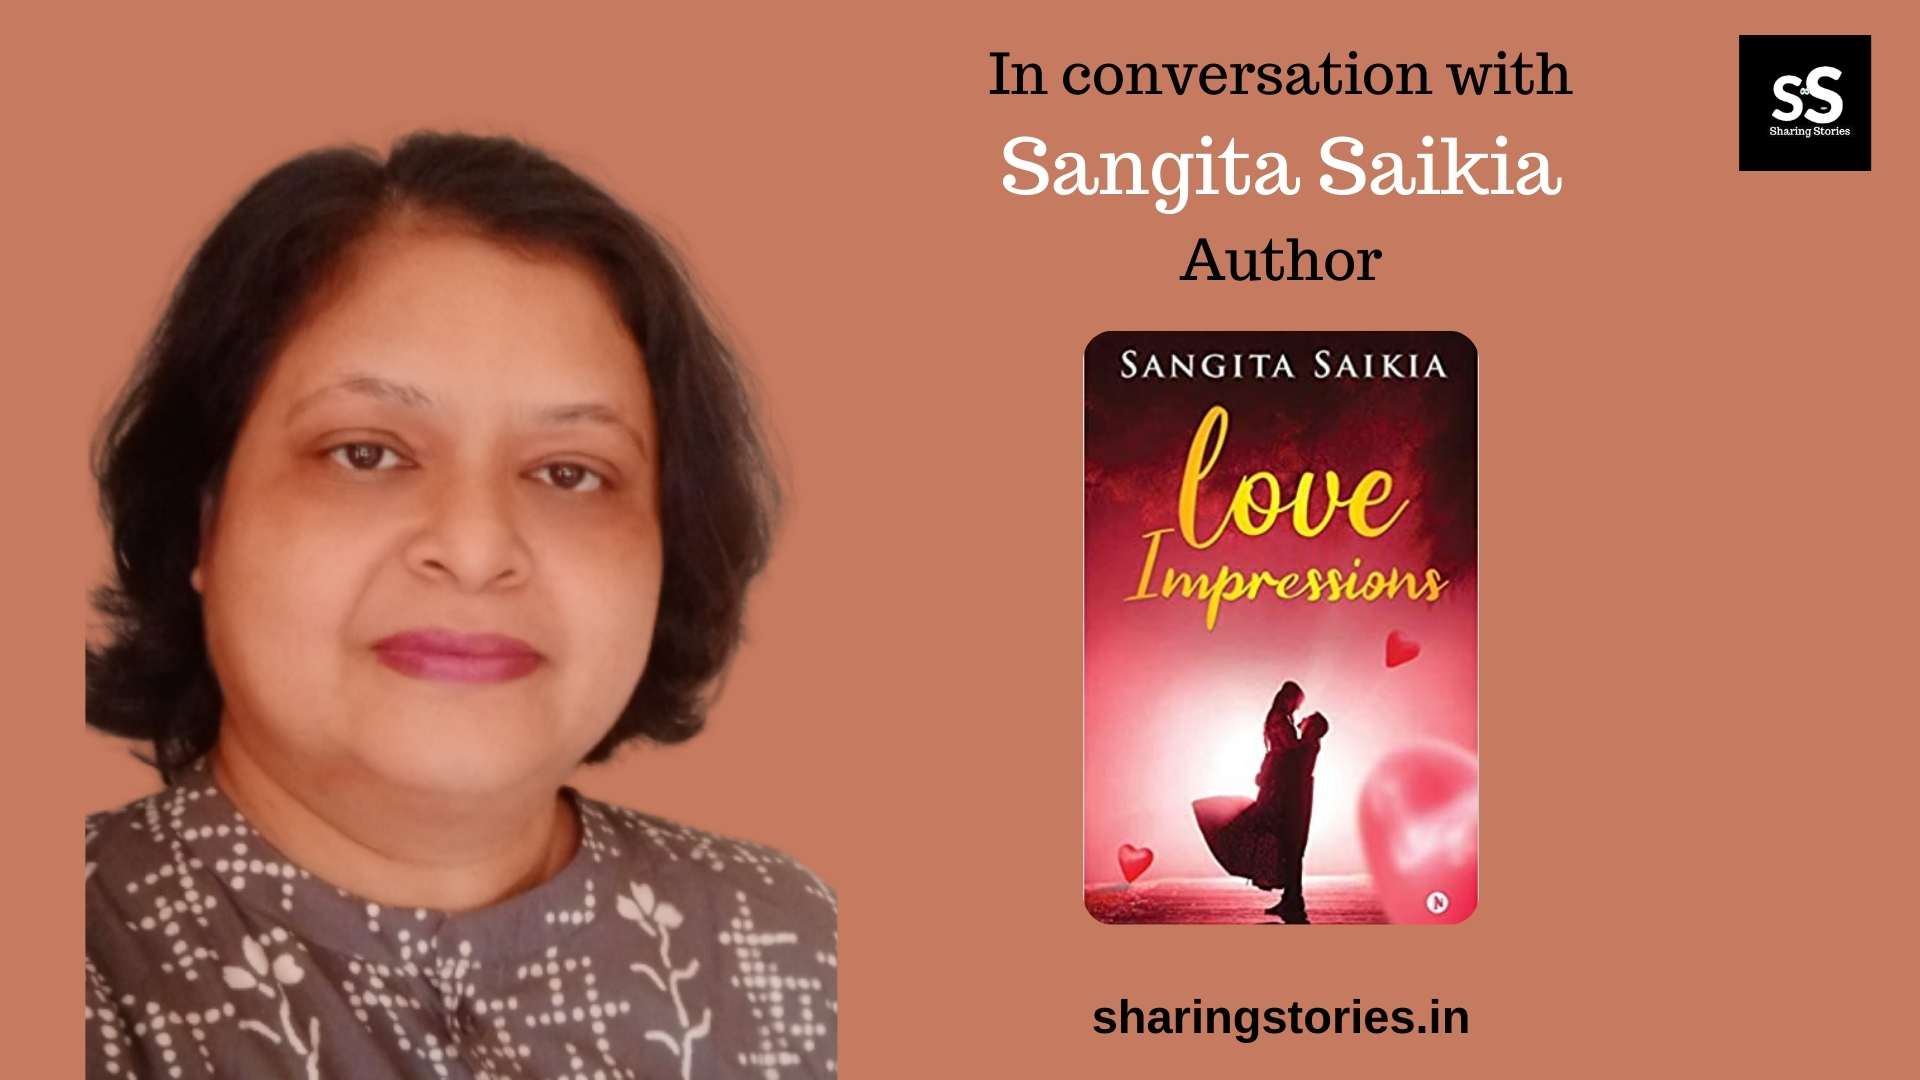 Author Sangita Saikia